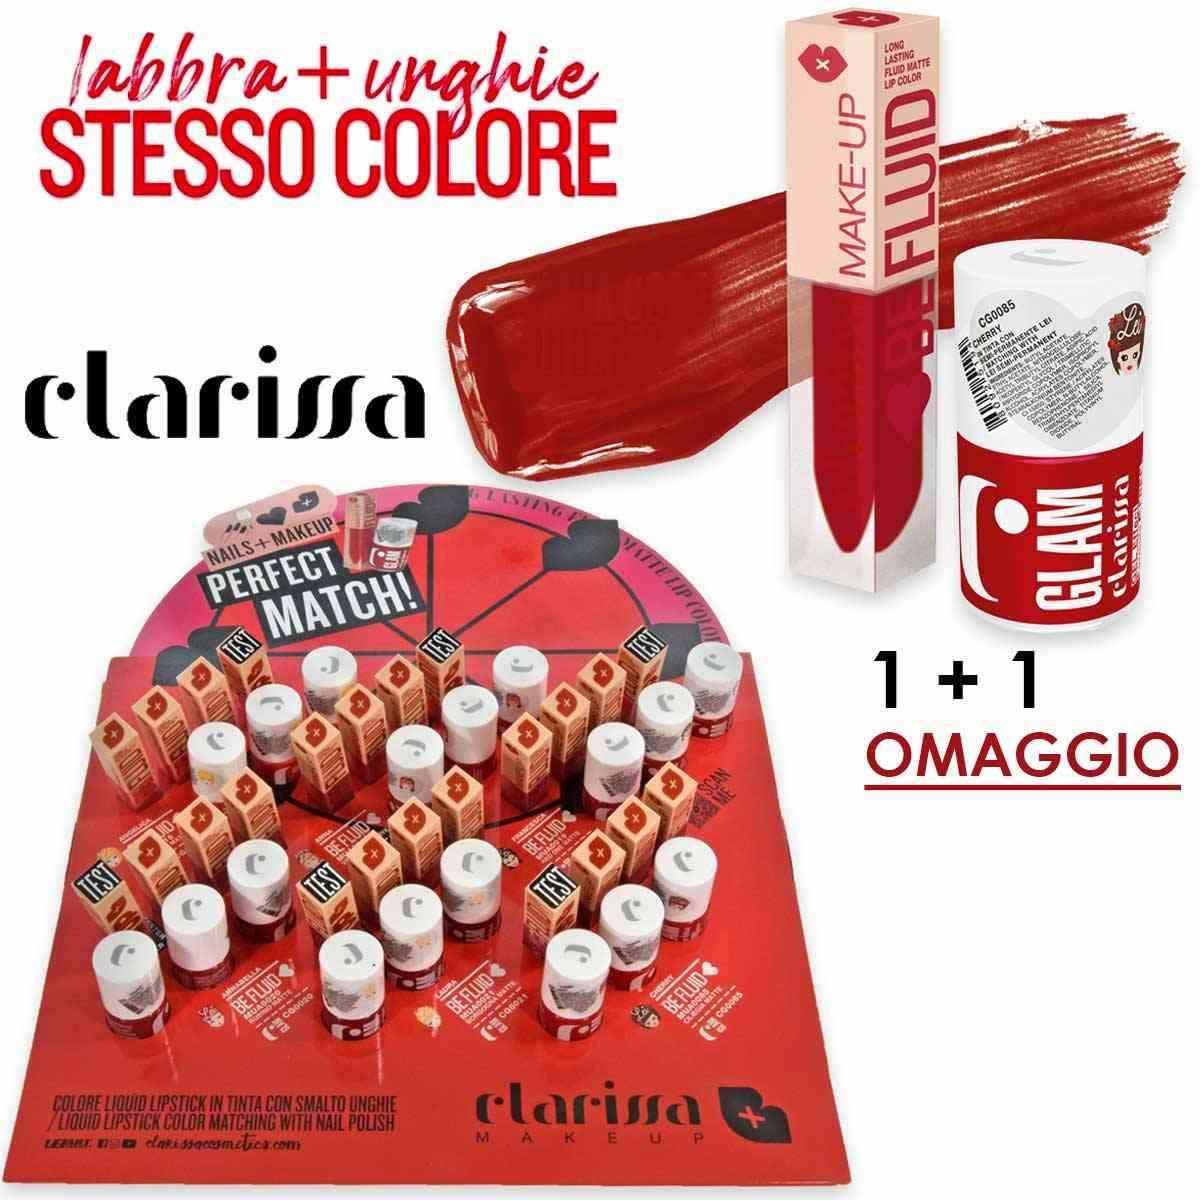 Clarissa Clarissa espositore makeup + nails omaggio CLAMUA